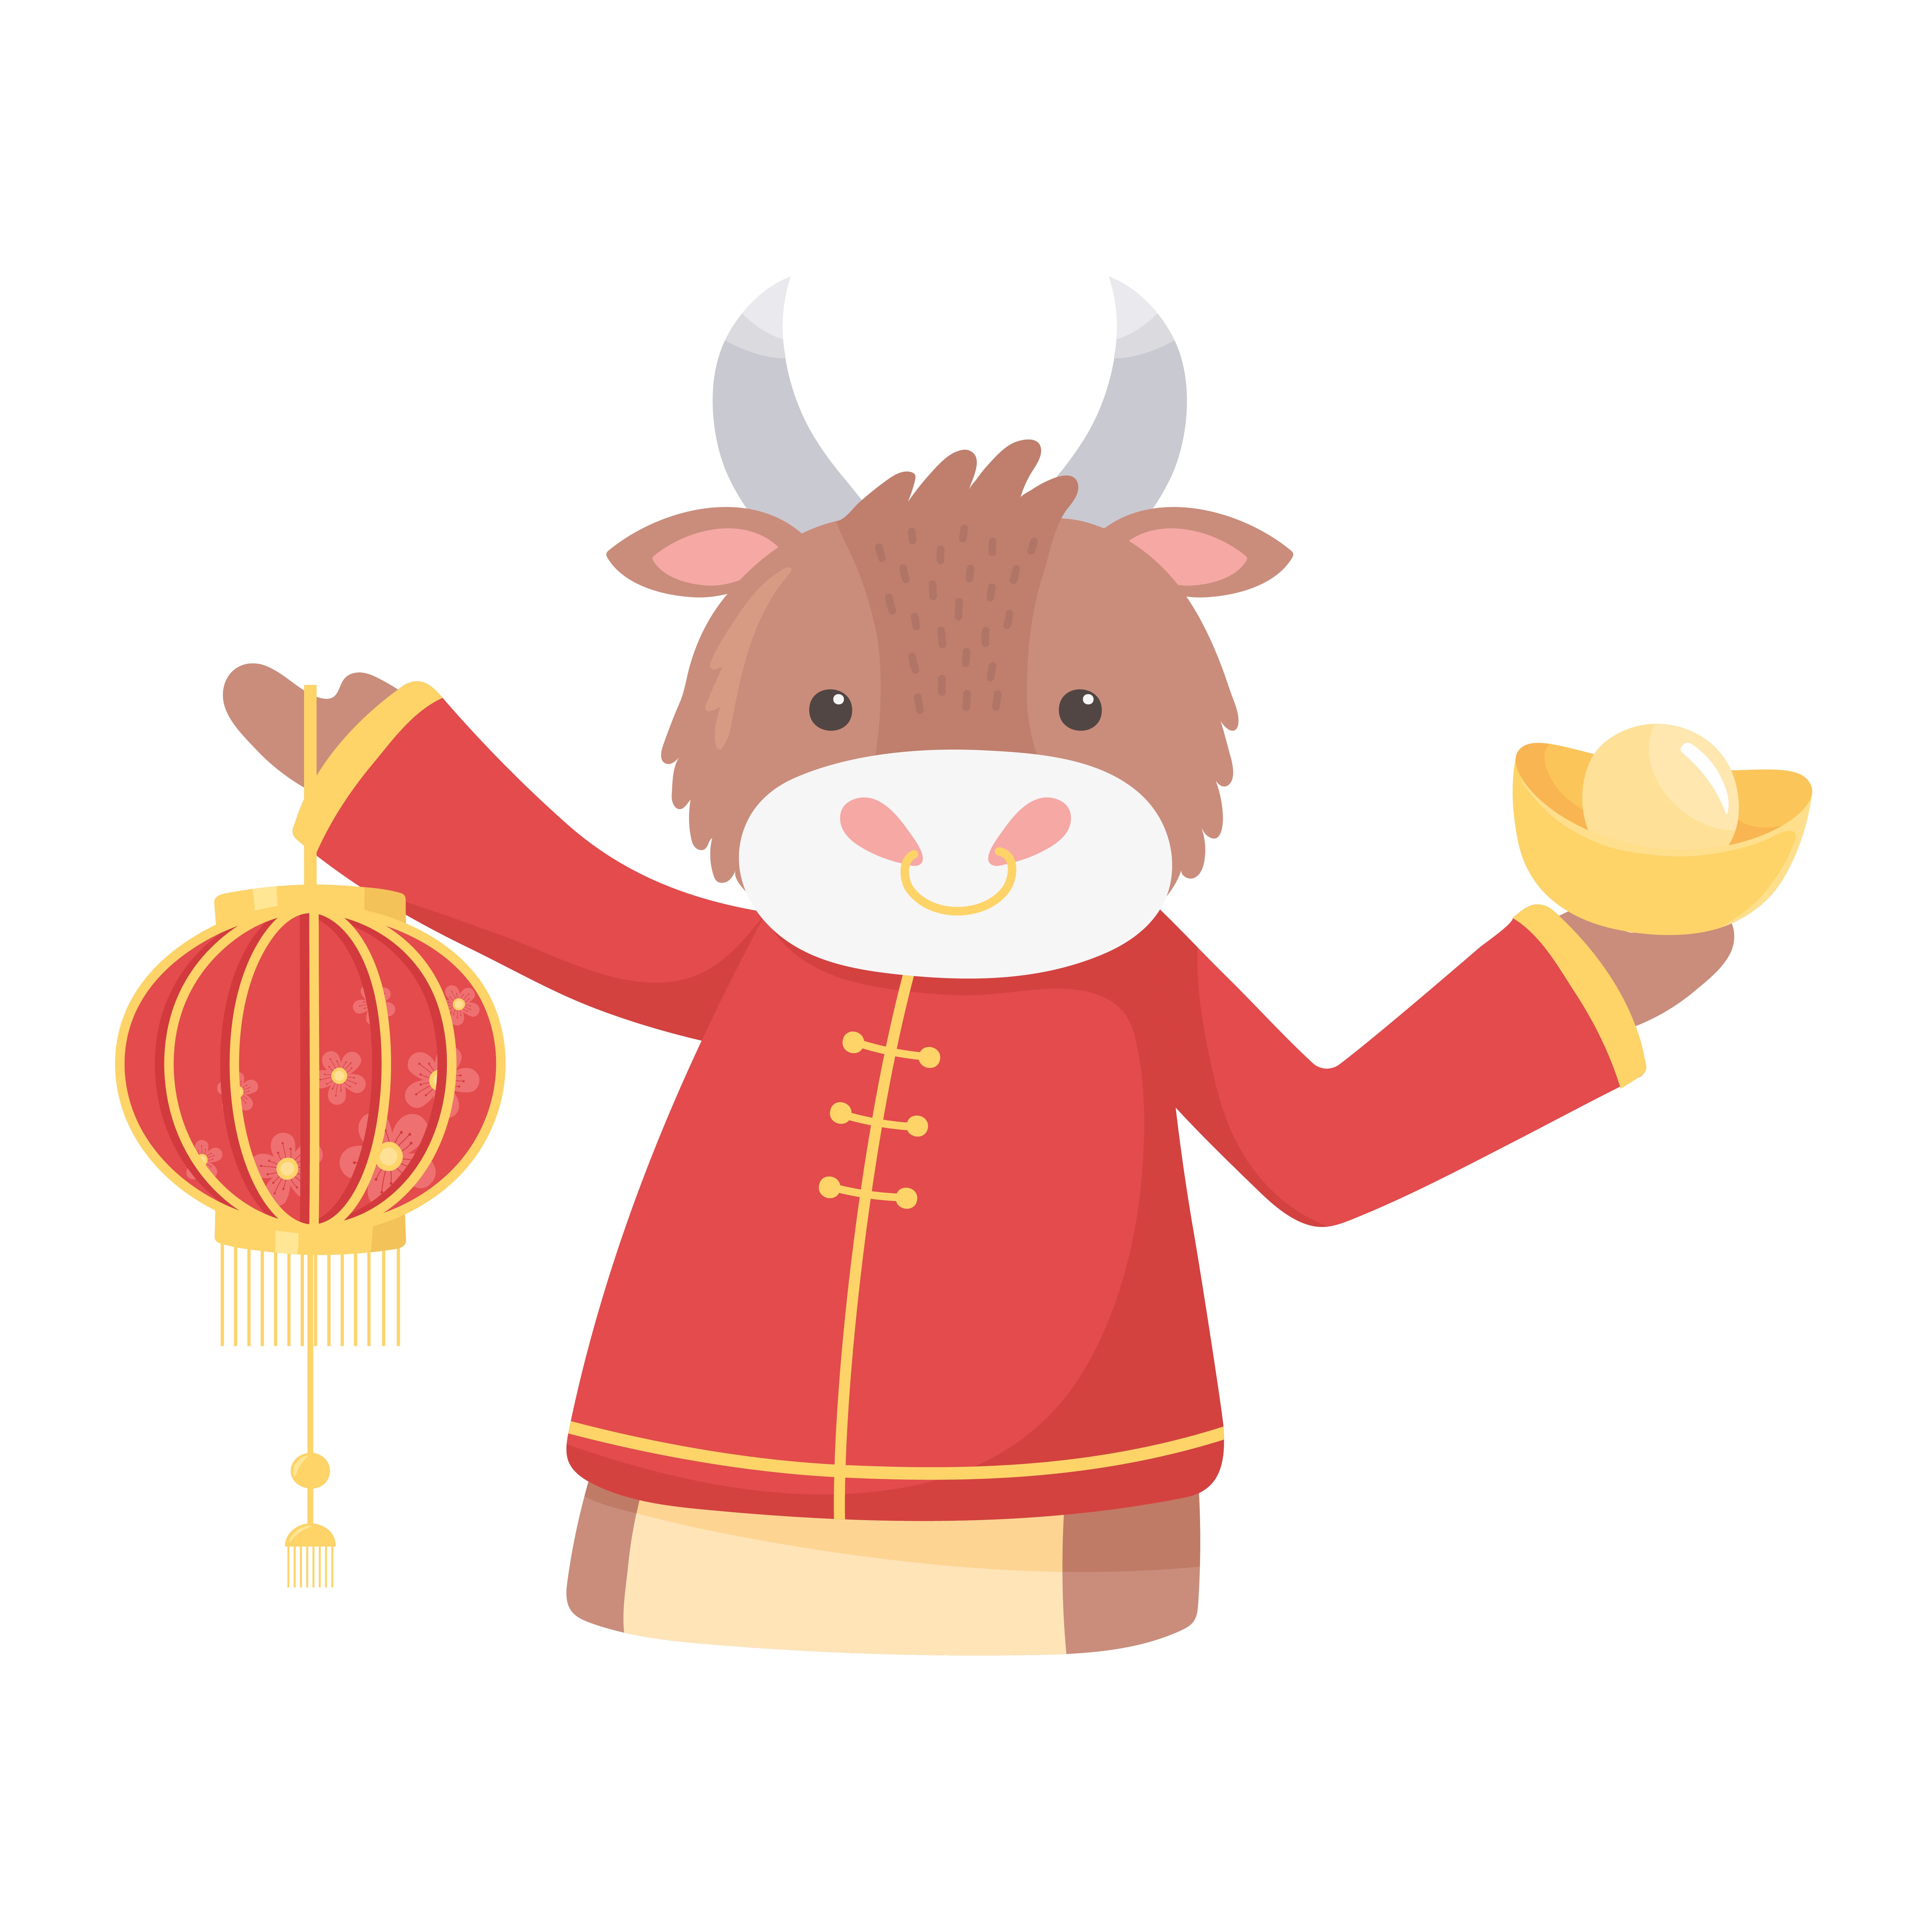 happy new year 2021 chinese, cartoon ox .vecteezy.com